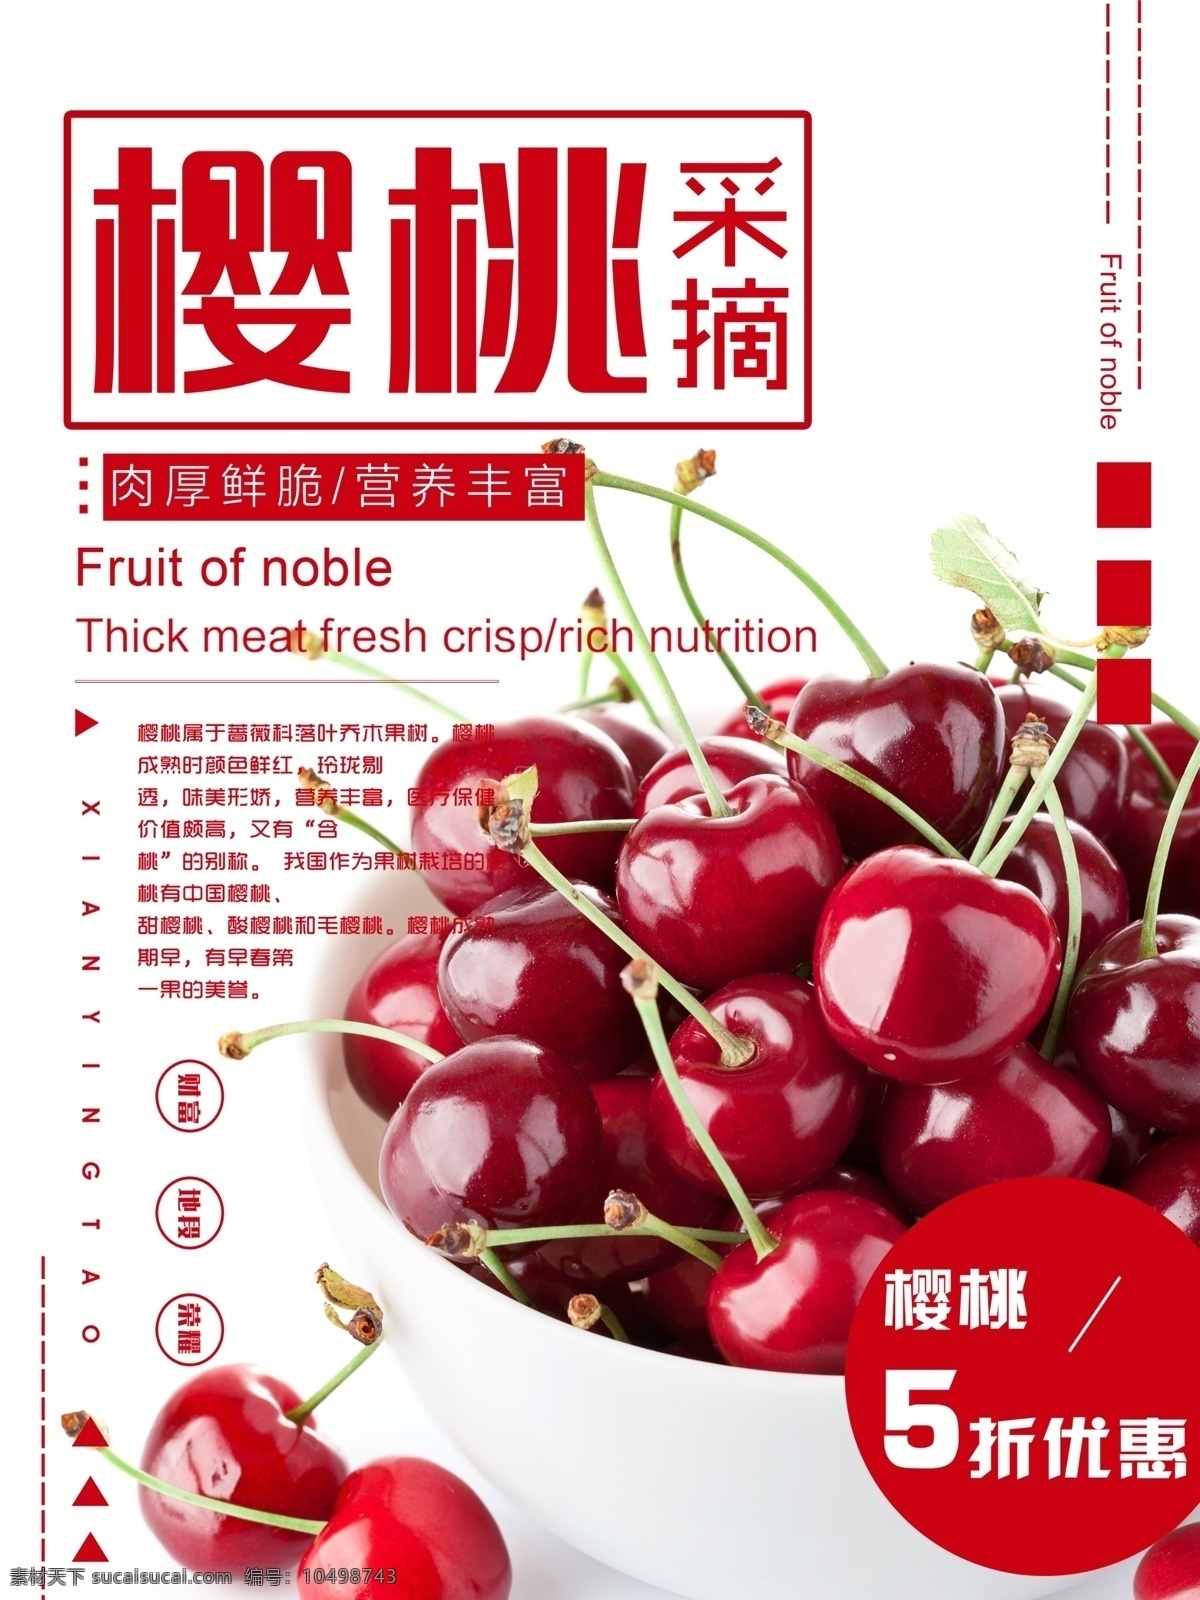 夏日 水果 樱桃 简约 清新 红色 商业 模板 夏日水果 促销